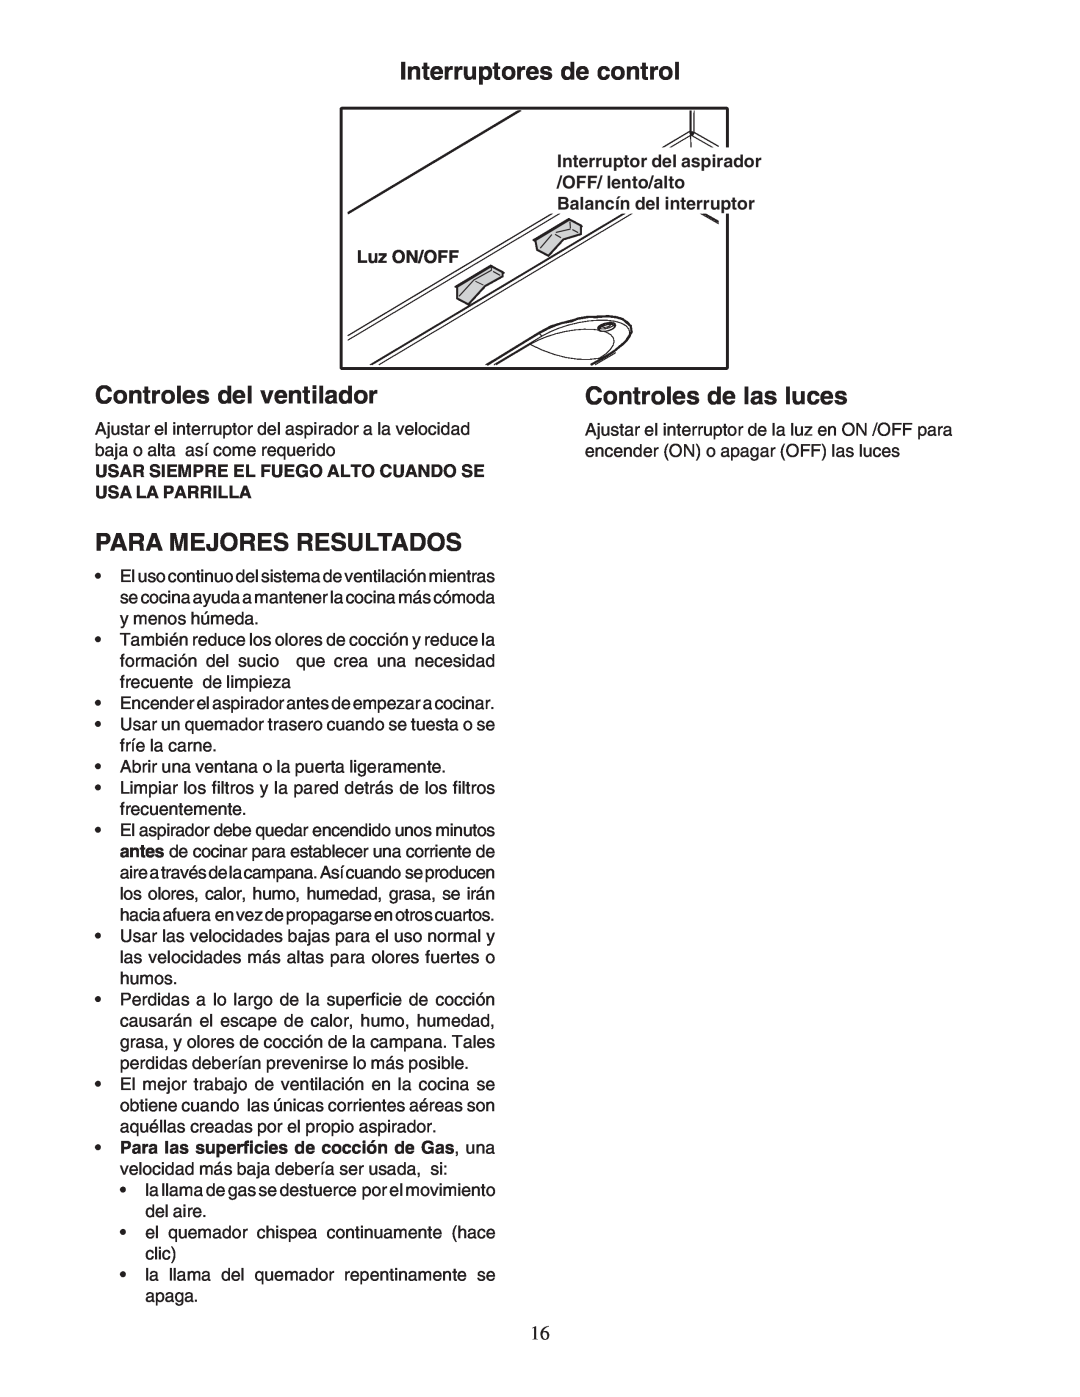 Bosch Appliances DPH30352UC manual Interruptores de control, Controles del ventilador, Para Mejores Resultados, Luz ON/OFF 